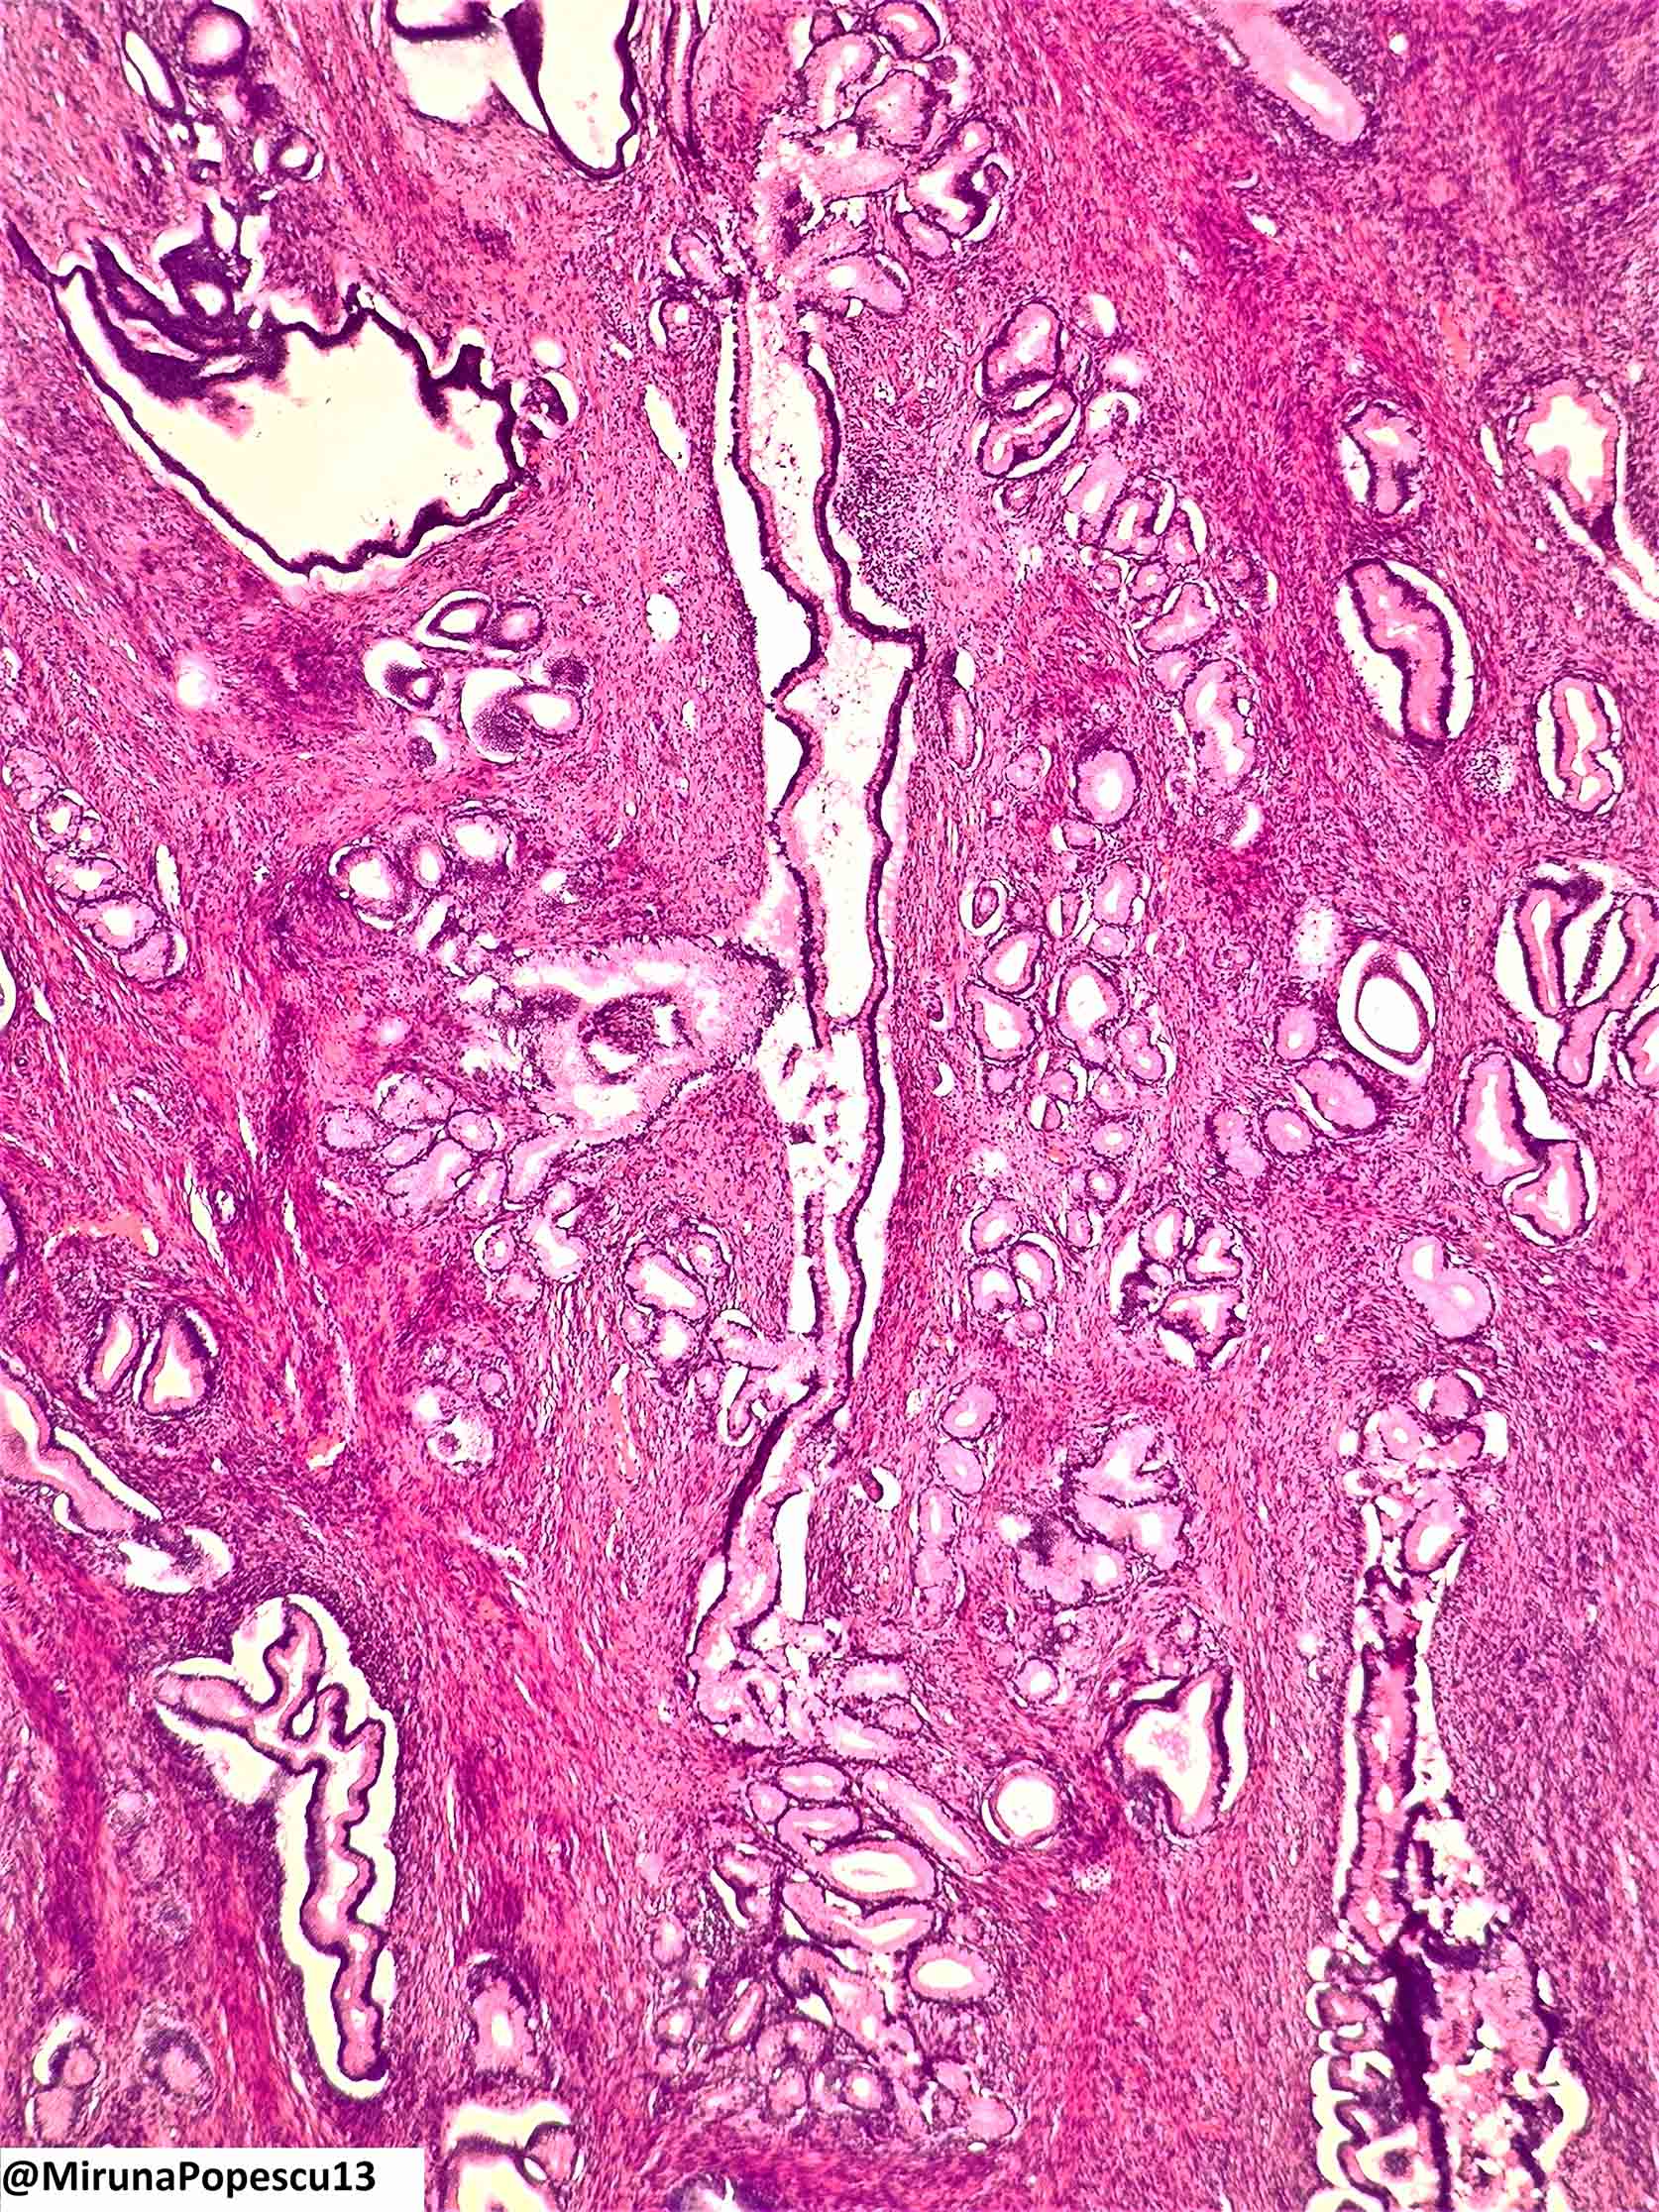 Lobular endocervical glandular hyperplasia